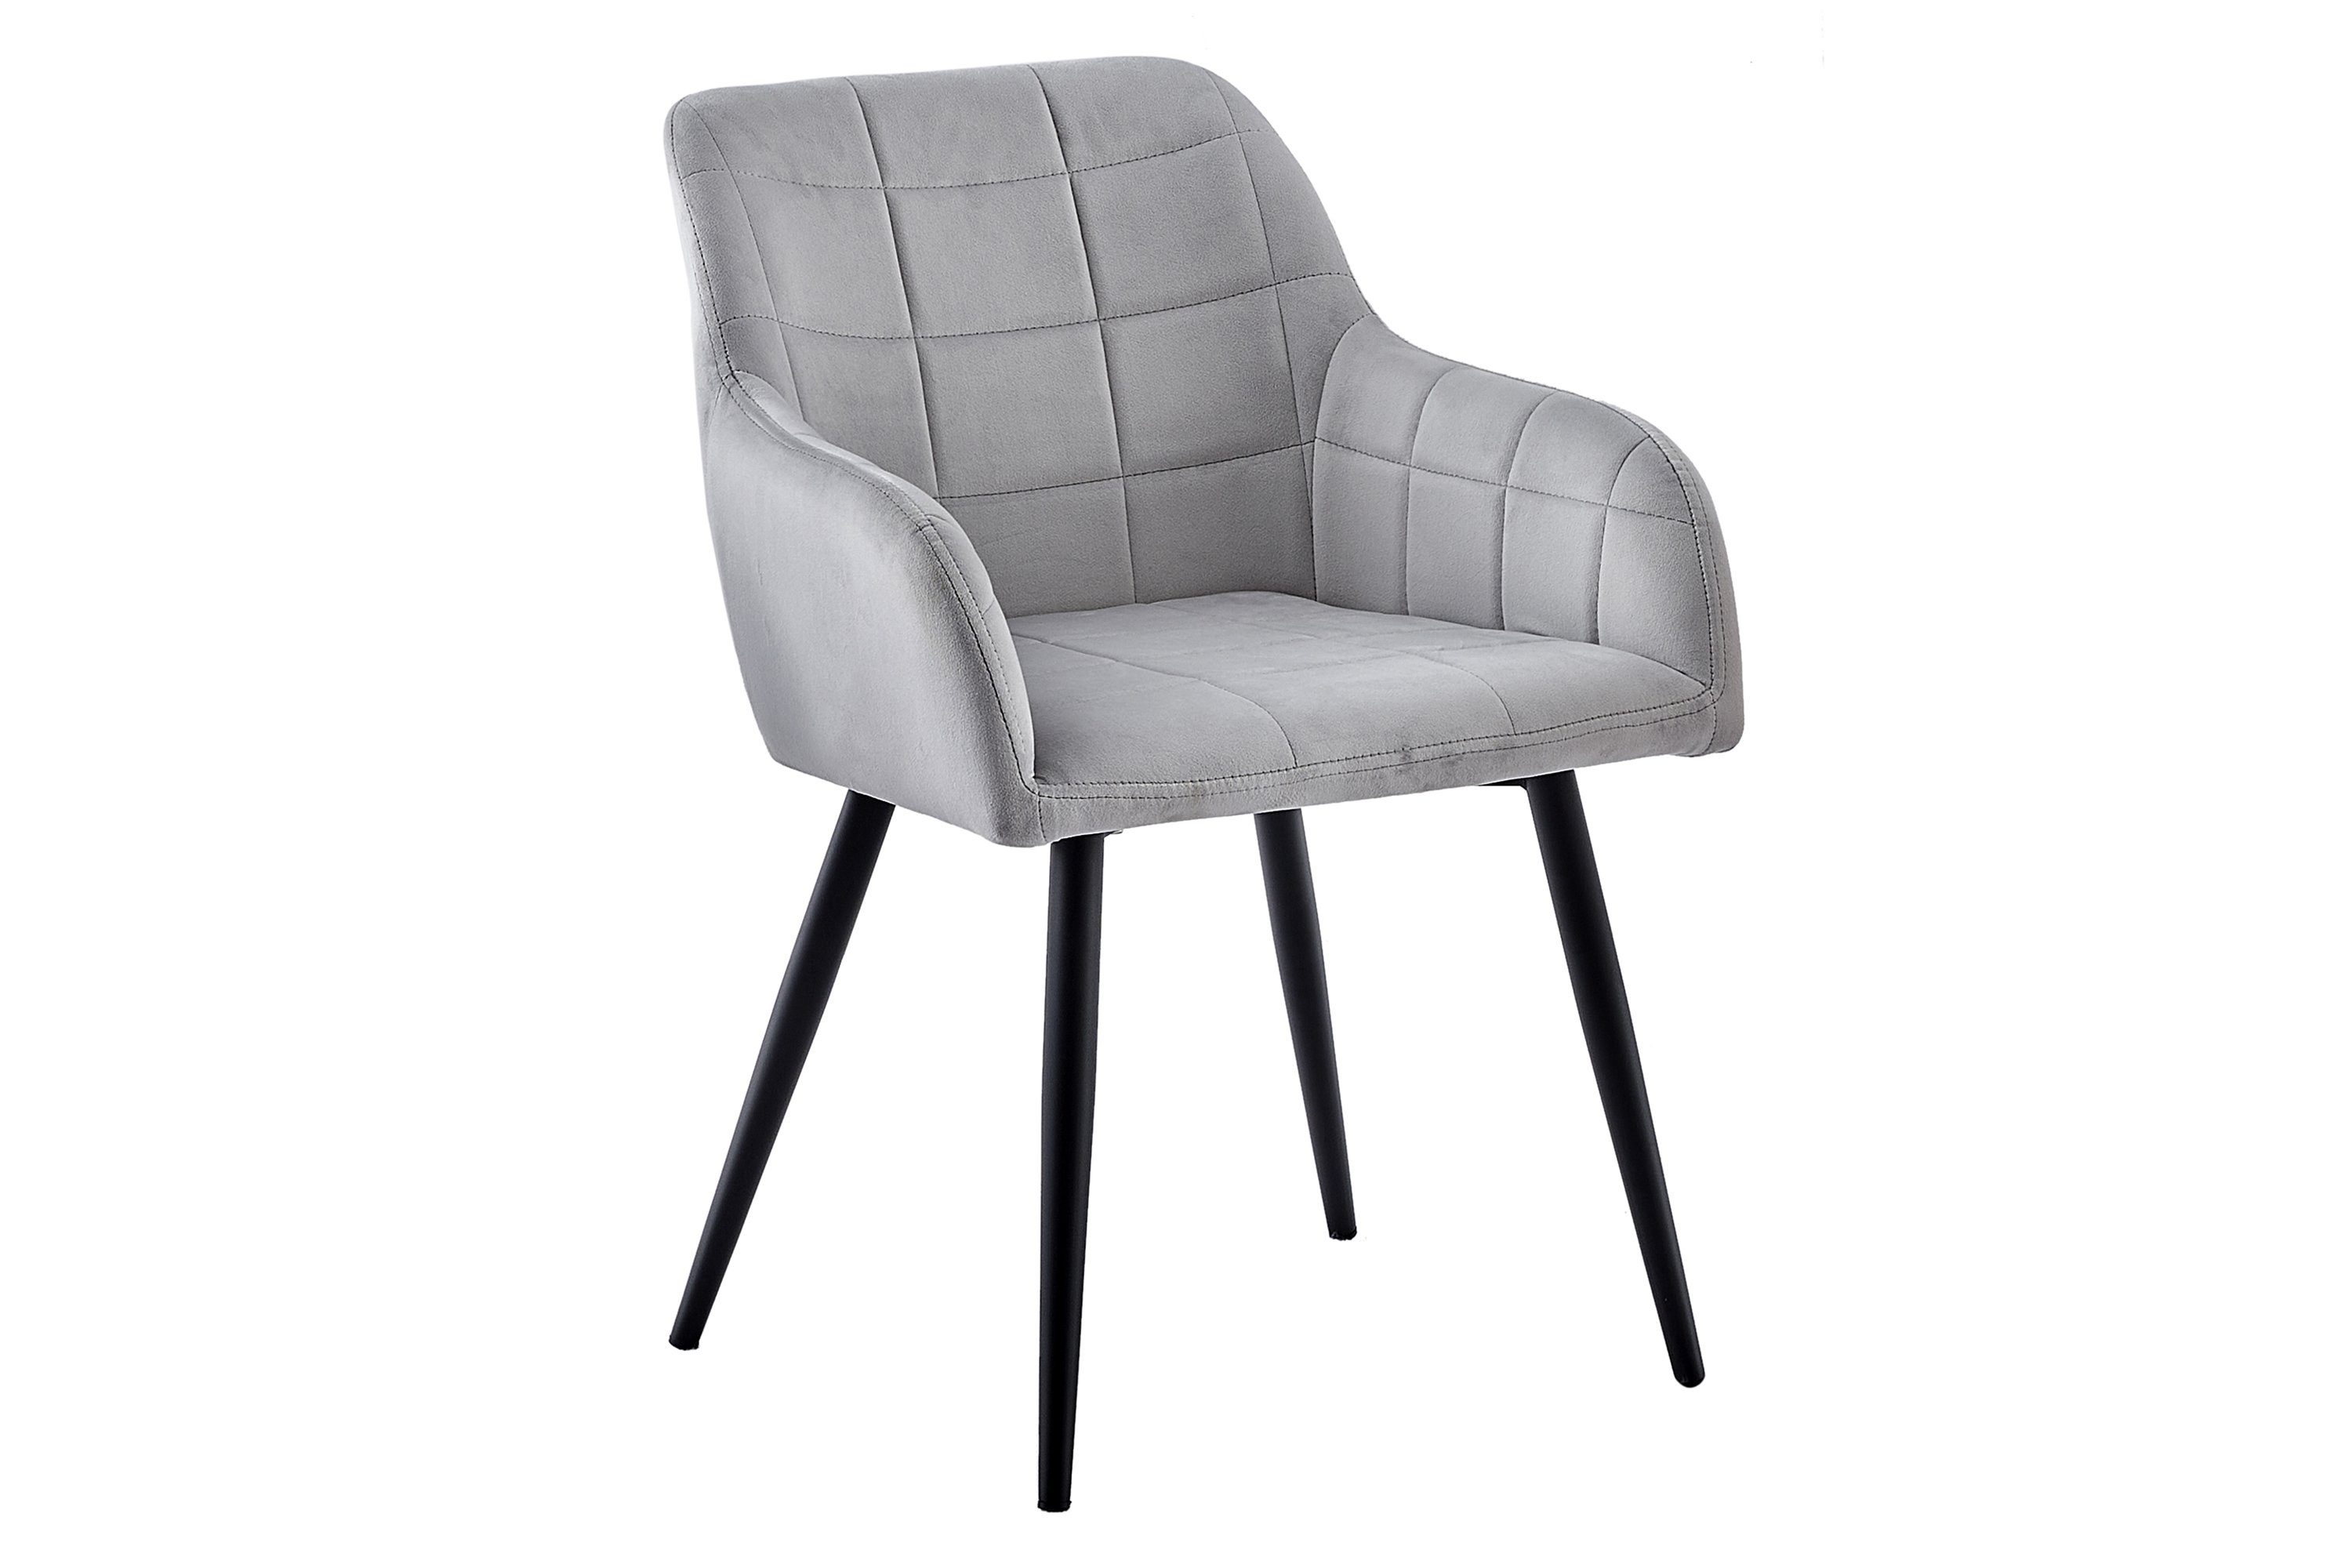 SAM® Schalenstuhl Kai, trendiger skandinavischer Stil mit ergonomischer Sitzschale Grau